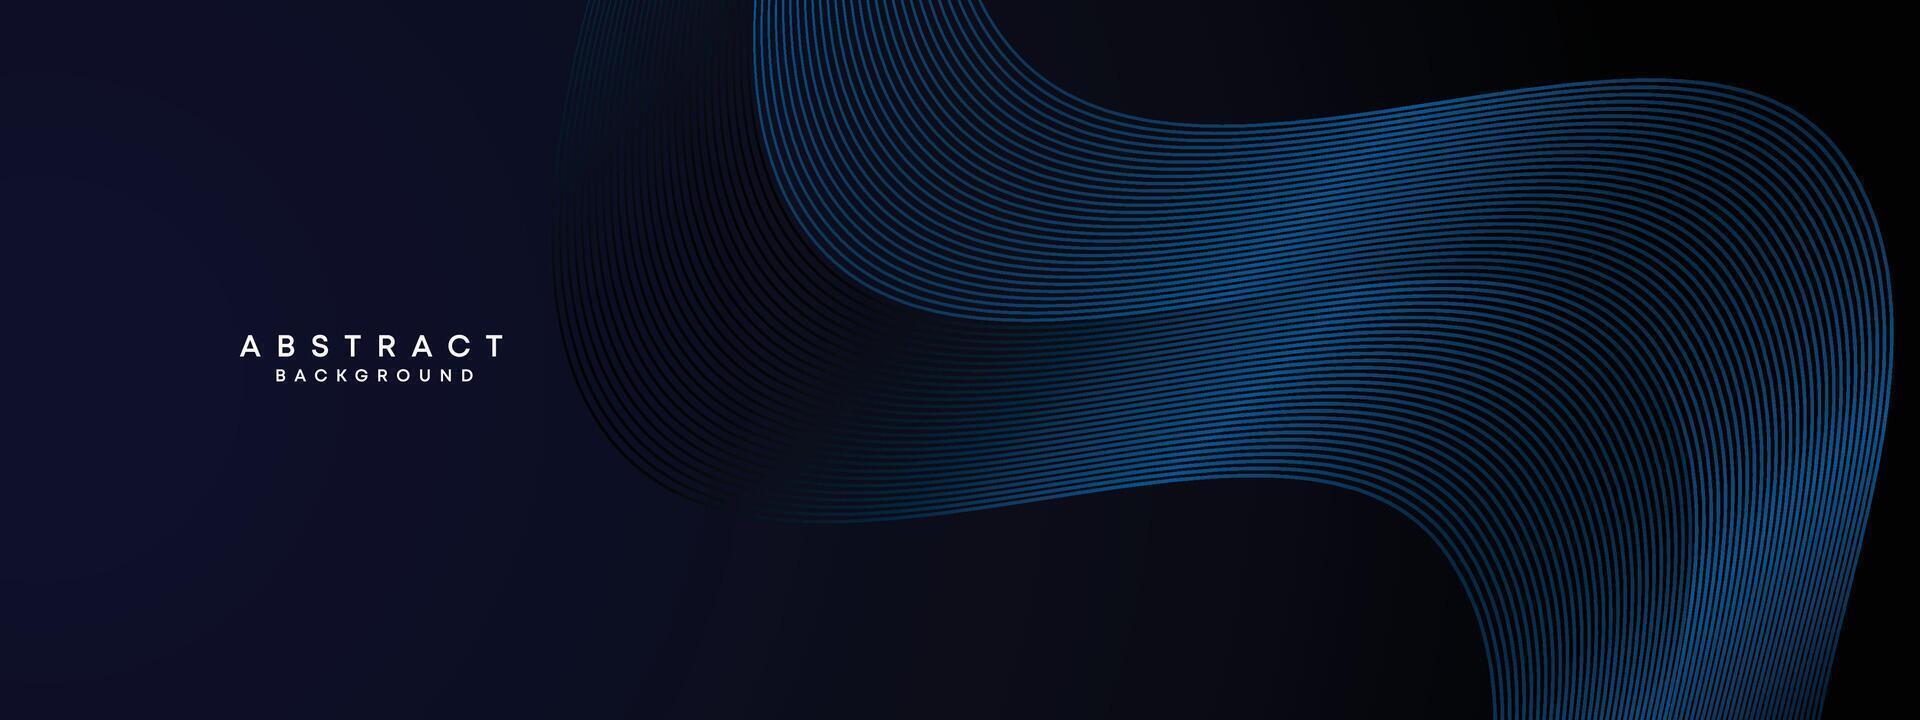 dunkel Marine Blau abstrakt winken Kreise Linien Technologie Hintergrund. modern Blau Gradient mit glühend Linien glänzend geometrisch gestalten Diagonale. zum Broschüre, Abdeckung, Poster, Banner, Webseite, Header, Flyer vektor